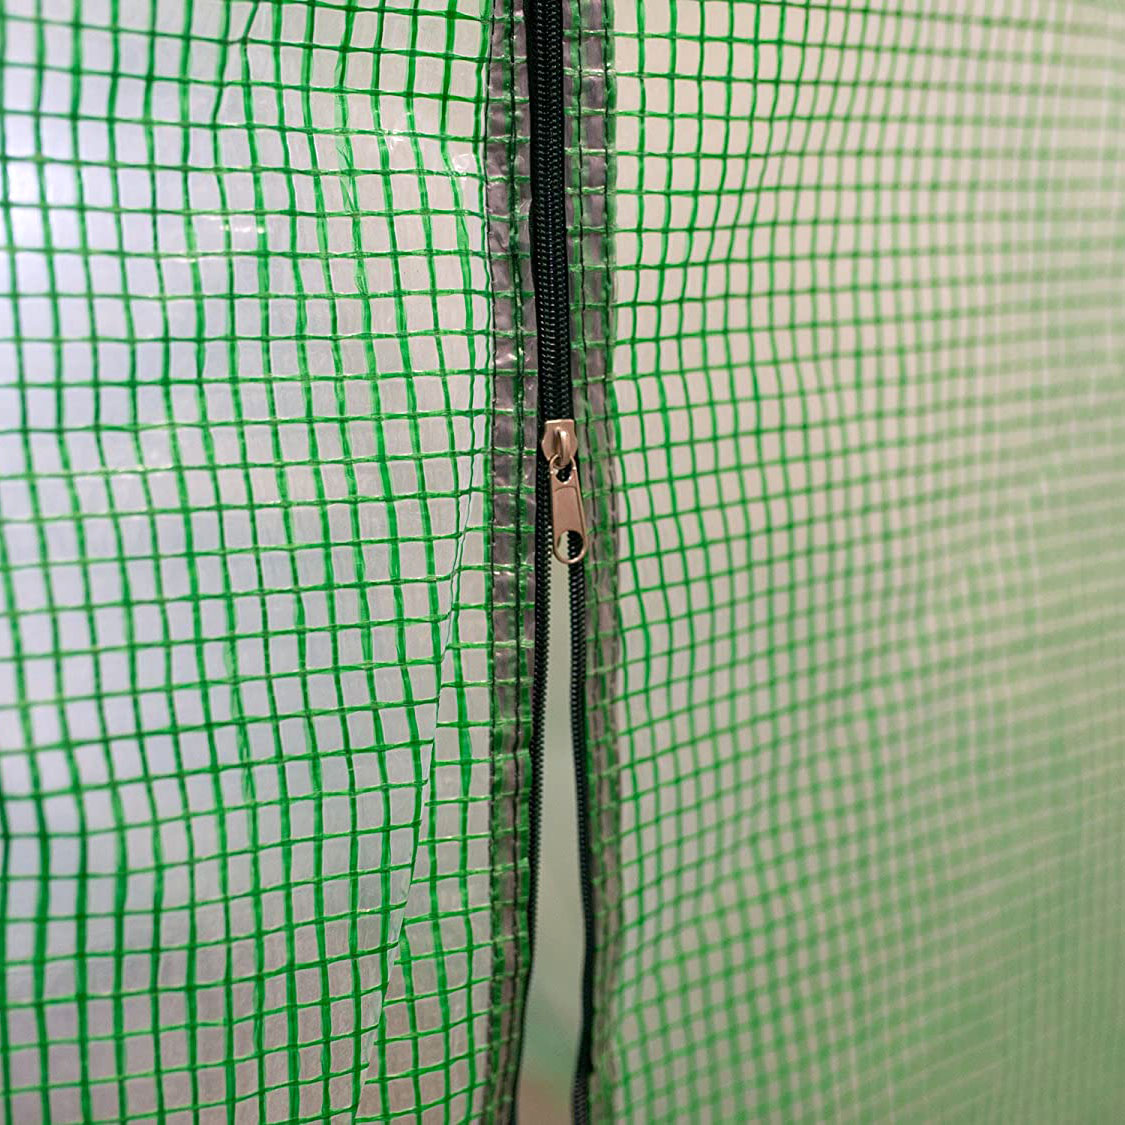 Tunel foliowy - szklarnia ogrodowa AUREA 2x3m